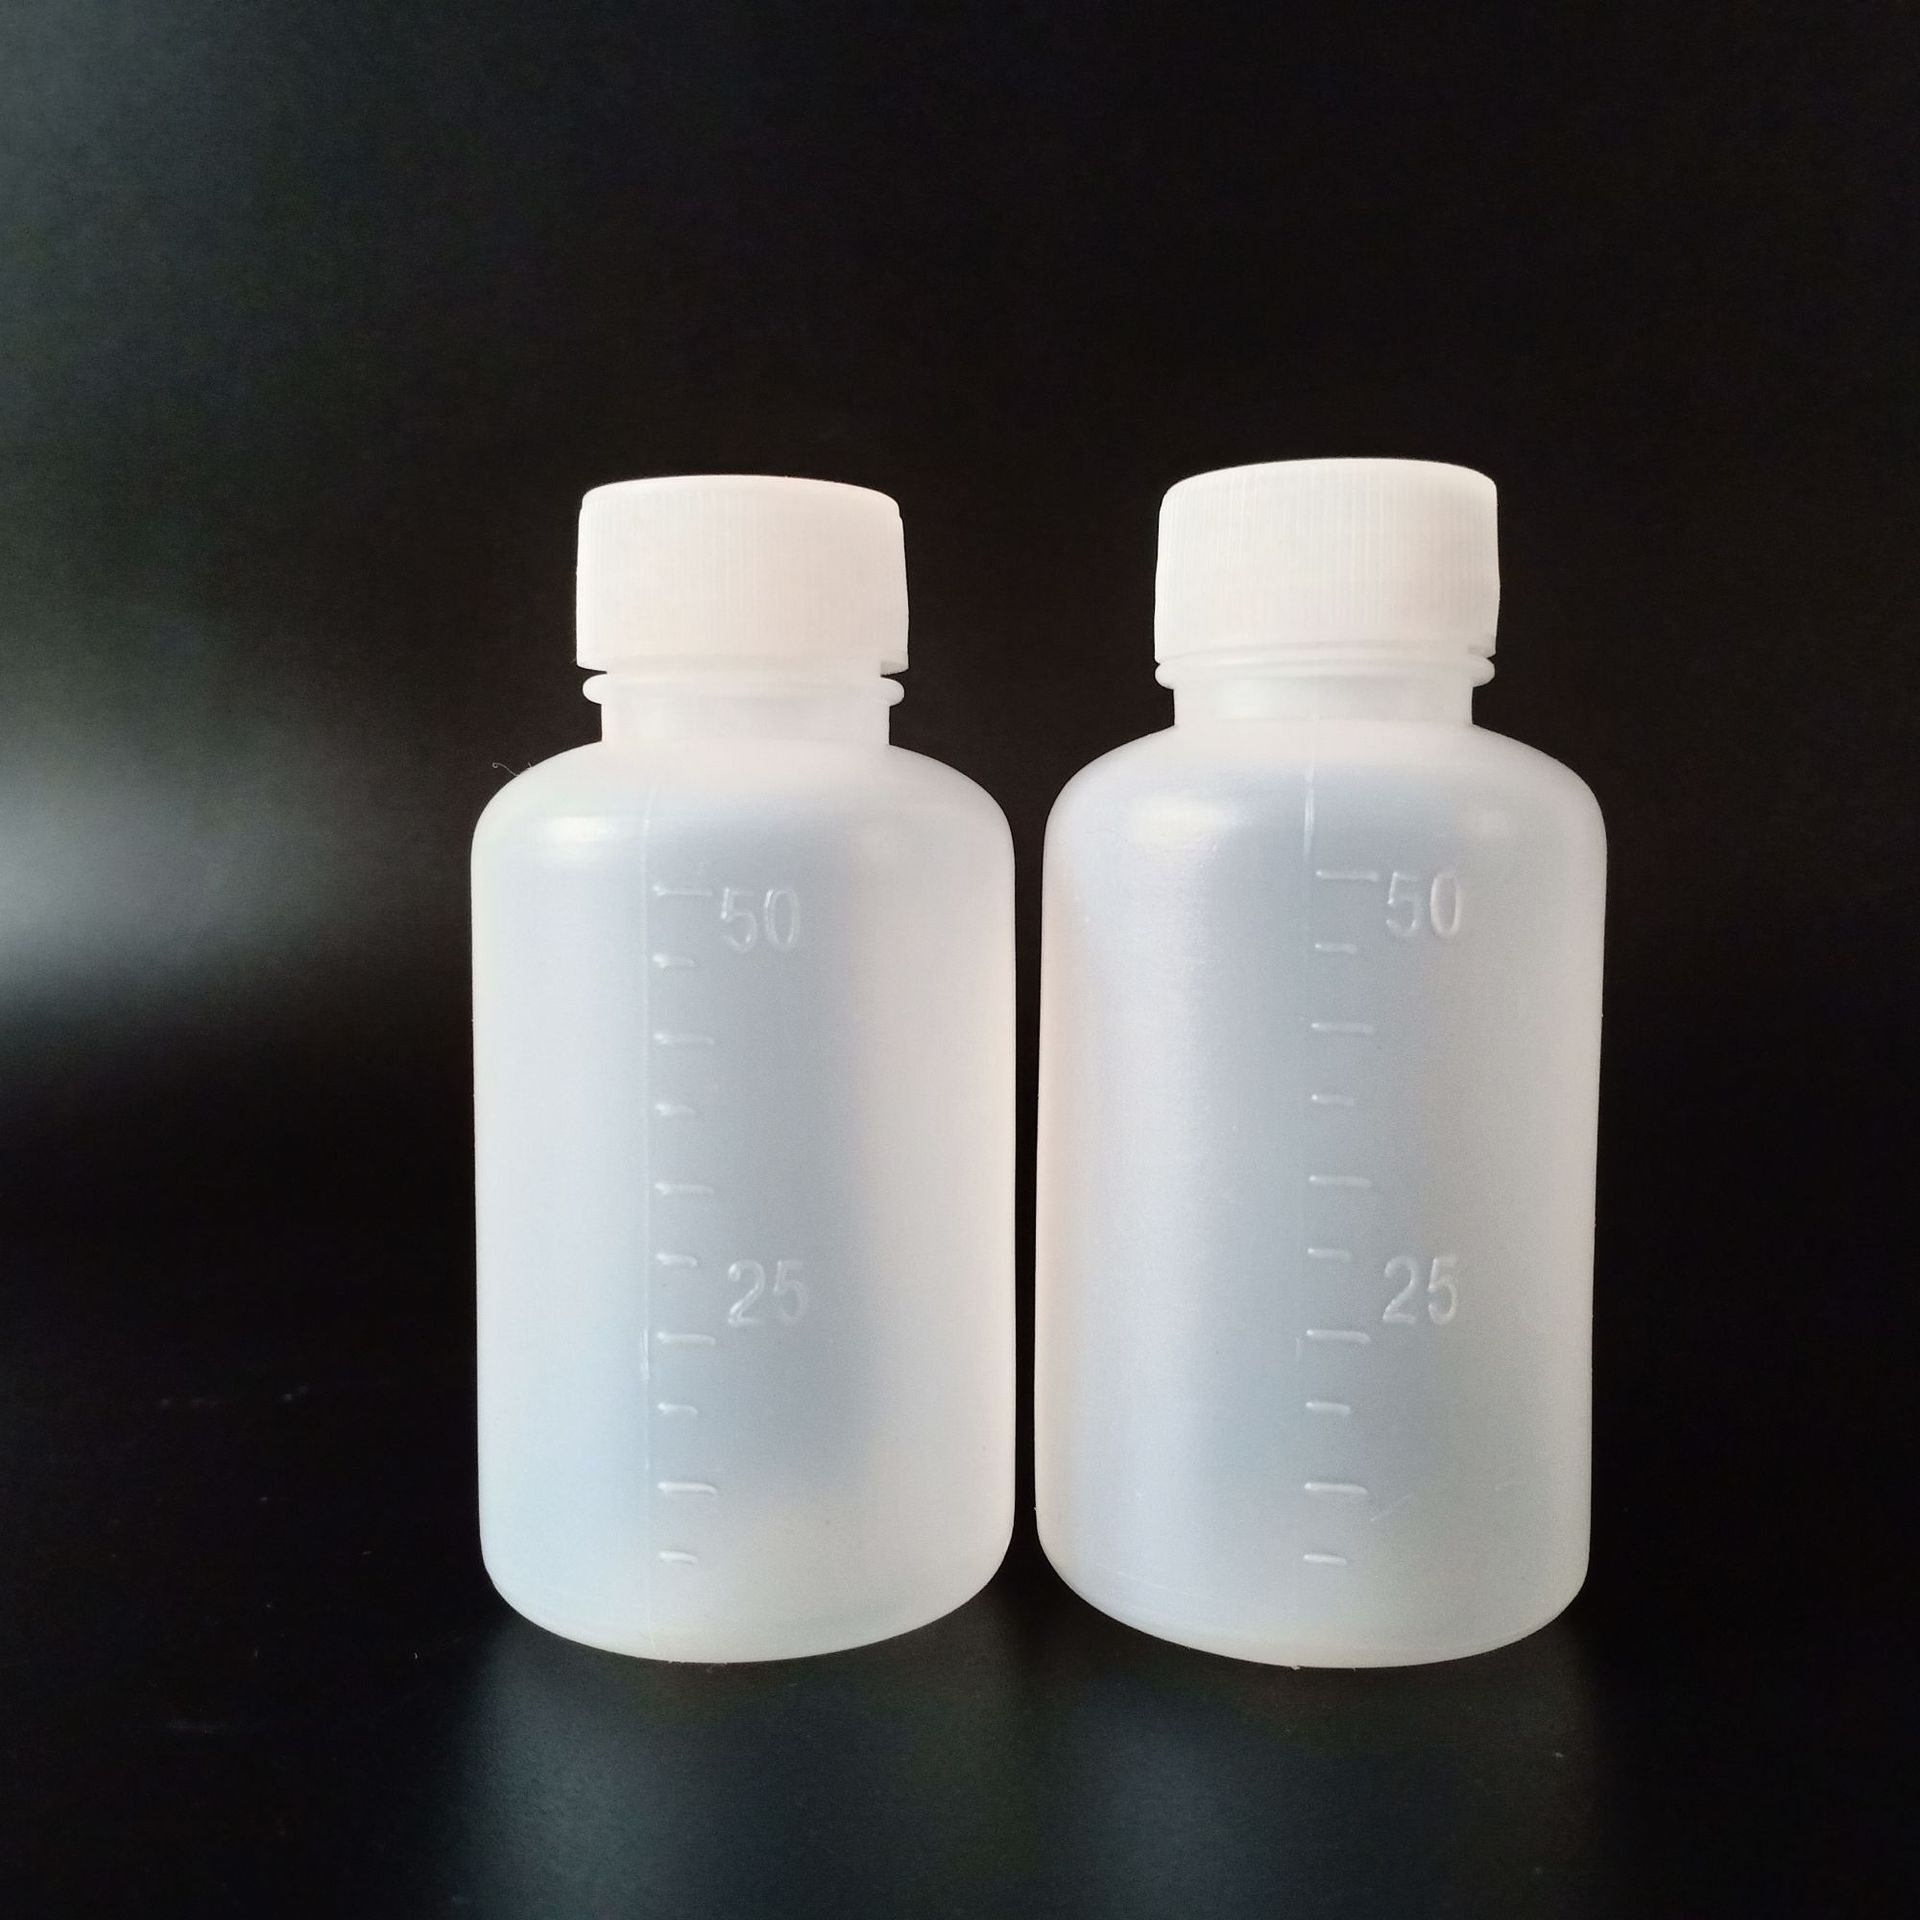 规格:50毫升水剂瓶 外观:白色半透明,小口.带有刻度(5毫升一个刻度).